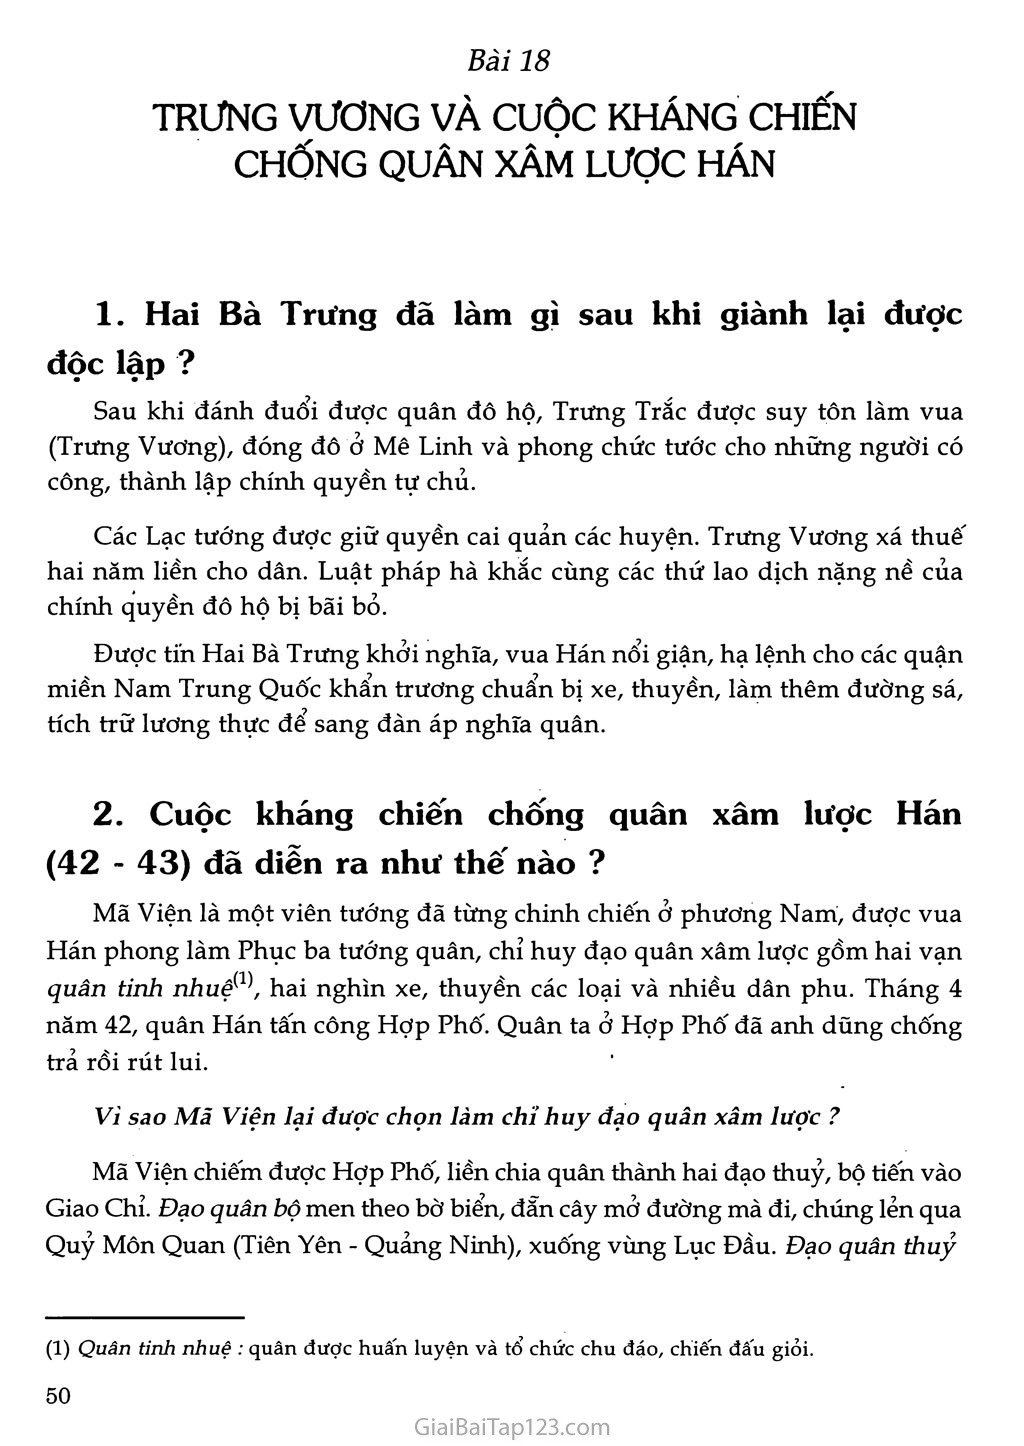 Bài 18 - Trưng Vương và cuộc kháng chiến chống quân xâm lược Hán (1 tiết) trang 1